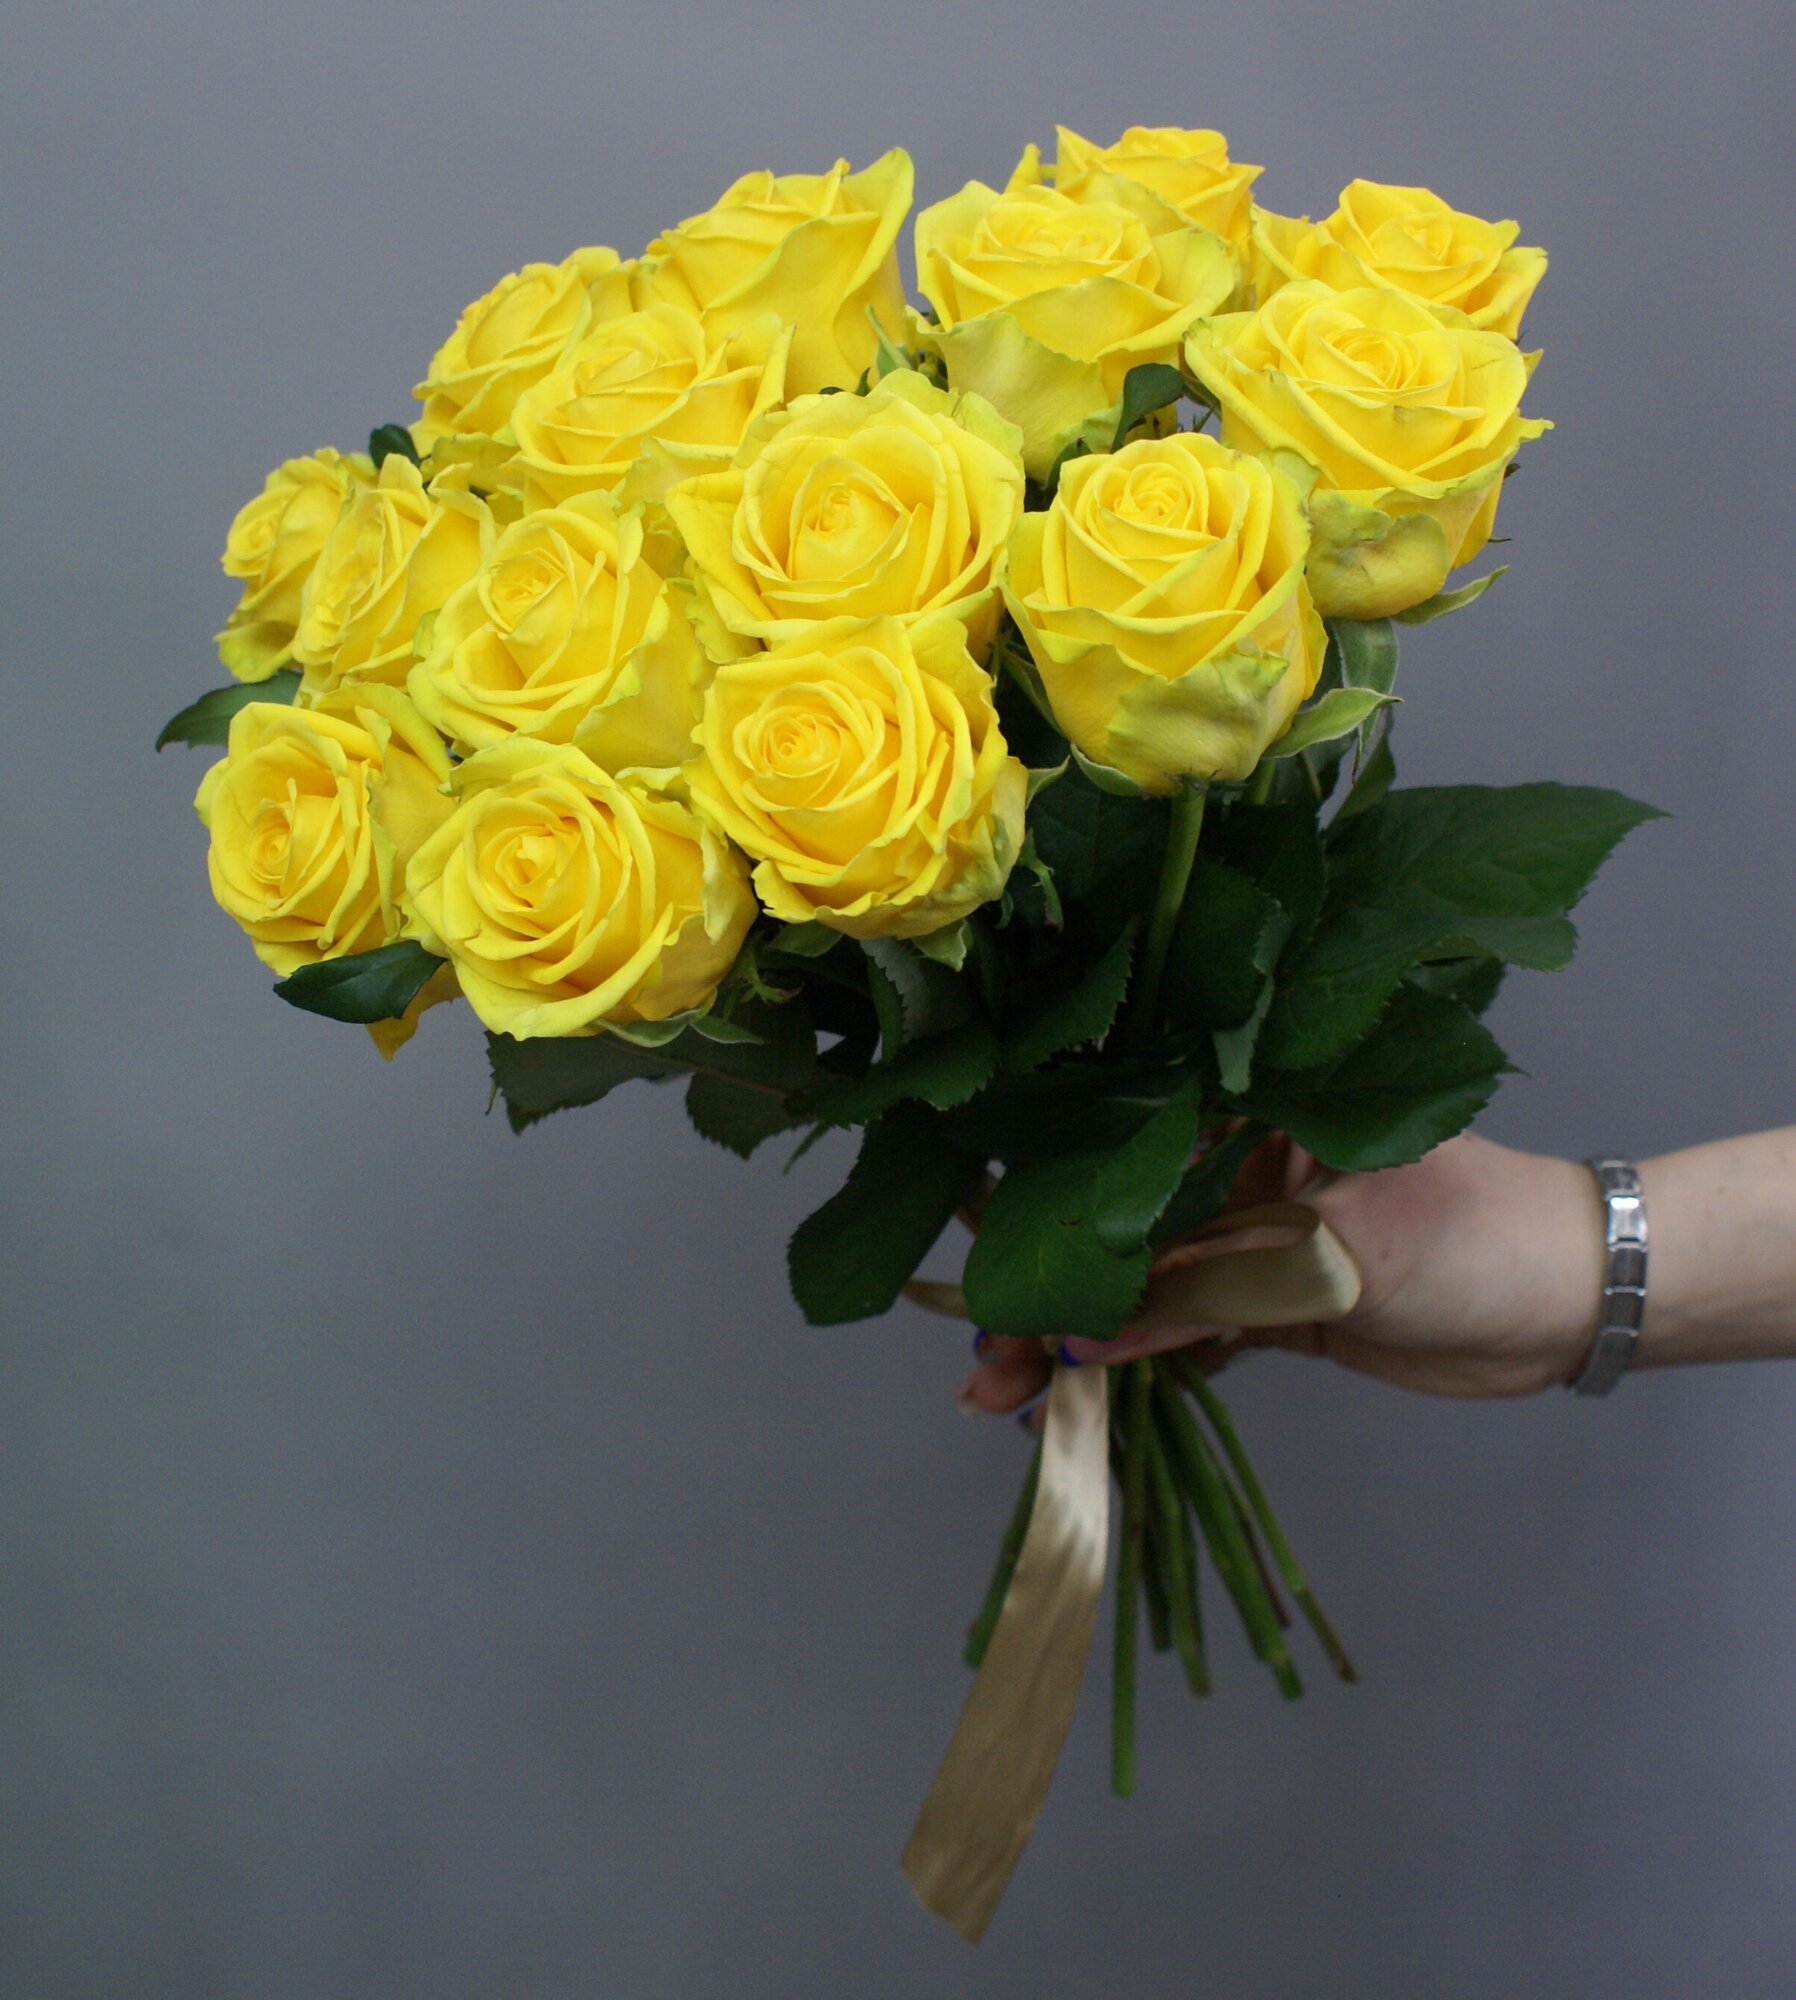 Розы желтые 15 штук,"Рассвет" под ленту 45 см Россия(большой бутон)